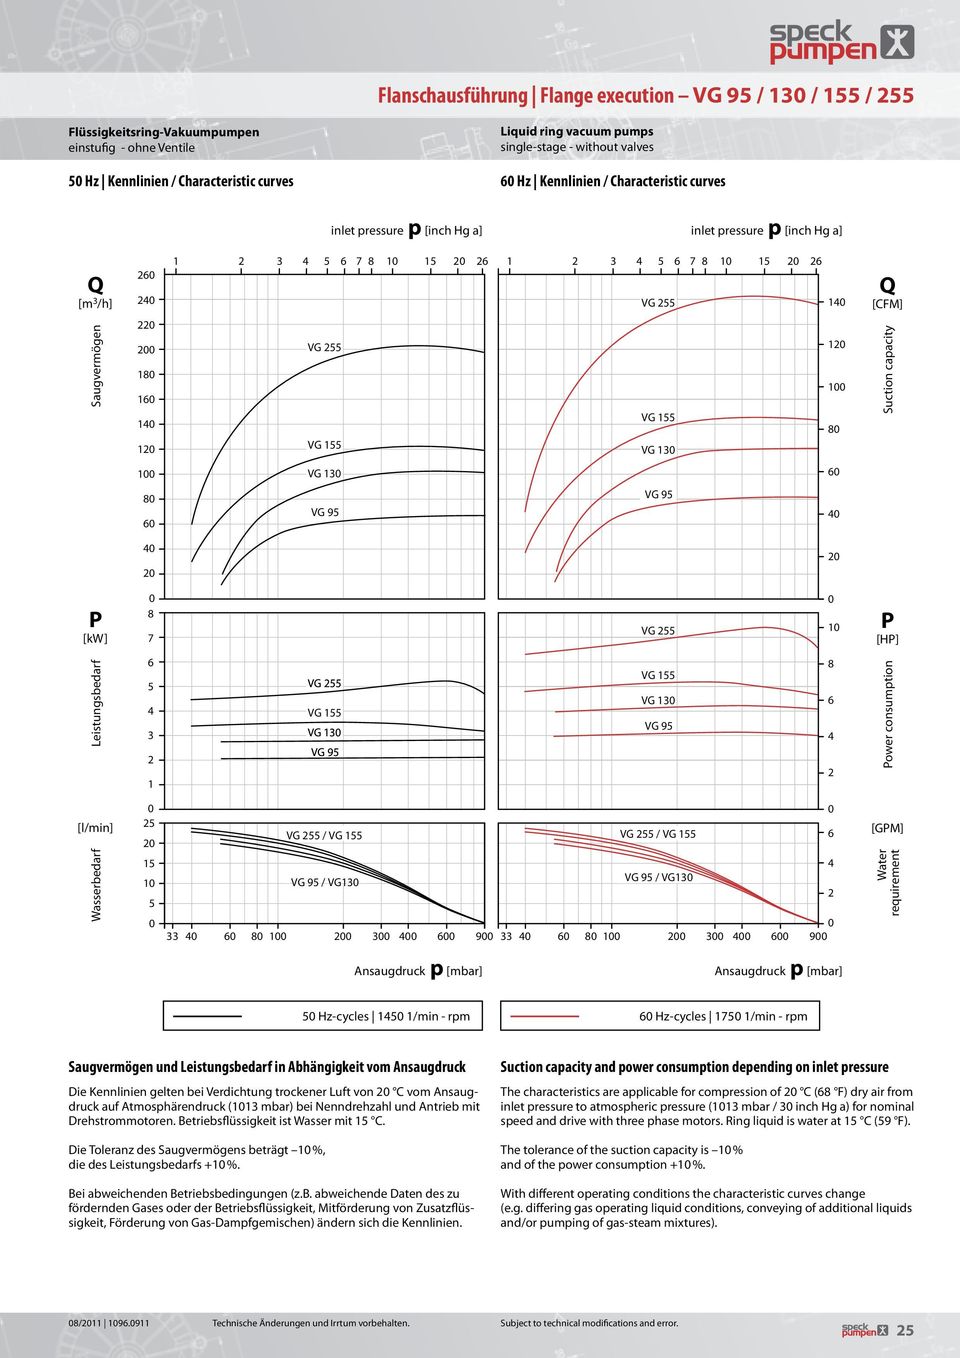 [GM] Water requirement Hz-cycles 1 1/min - rpm Hz-cycles 17 1/min - rpm Saugvermögen und Leistungsbedarf in Abhängigkeit vom Ansaugdruck Die Kennlinien gelten bei Verdichtung trockener Luft von C vom